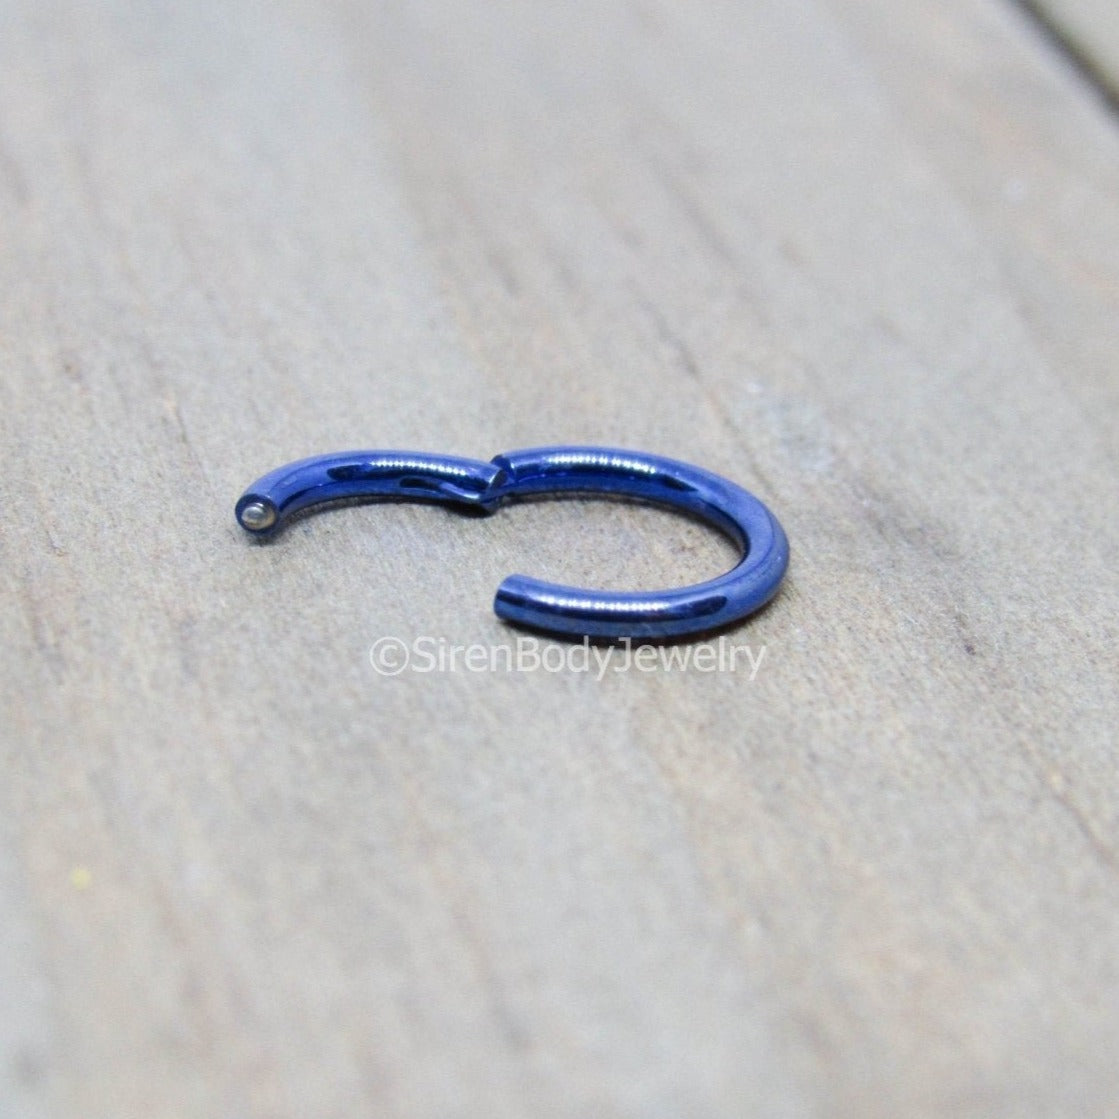 Septum piercing hinged segment ring tiny tragus hoop silver 16g 1/4" 6mm diameter easy insert helix piercing ring ear hoops - SirenBodyJewelry